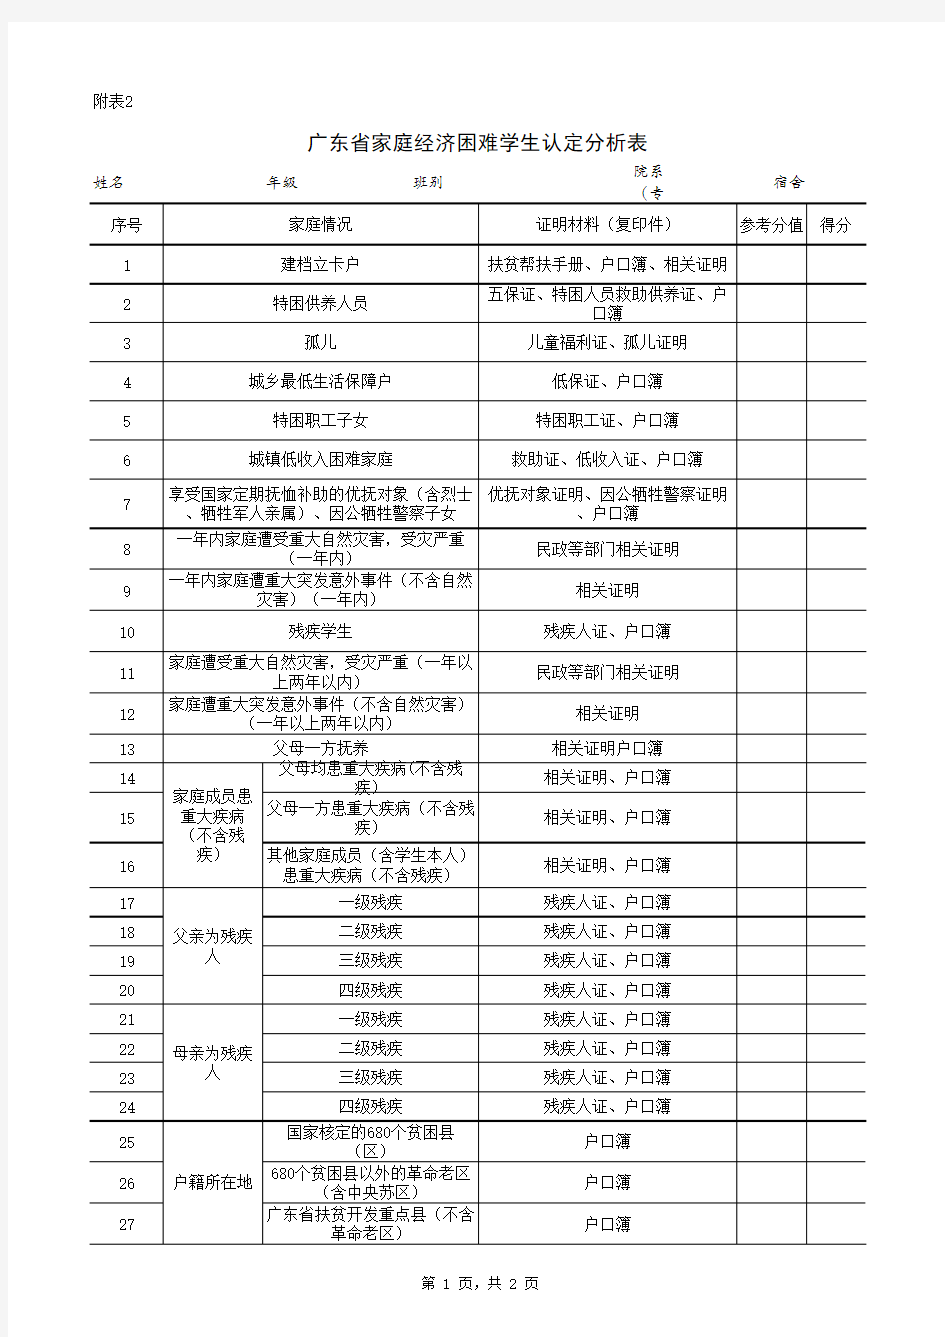 广东省家庭经济困难学生认定分析表